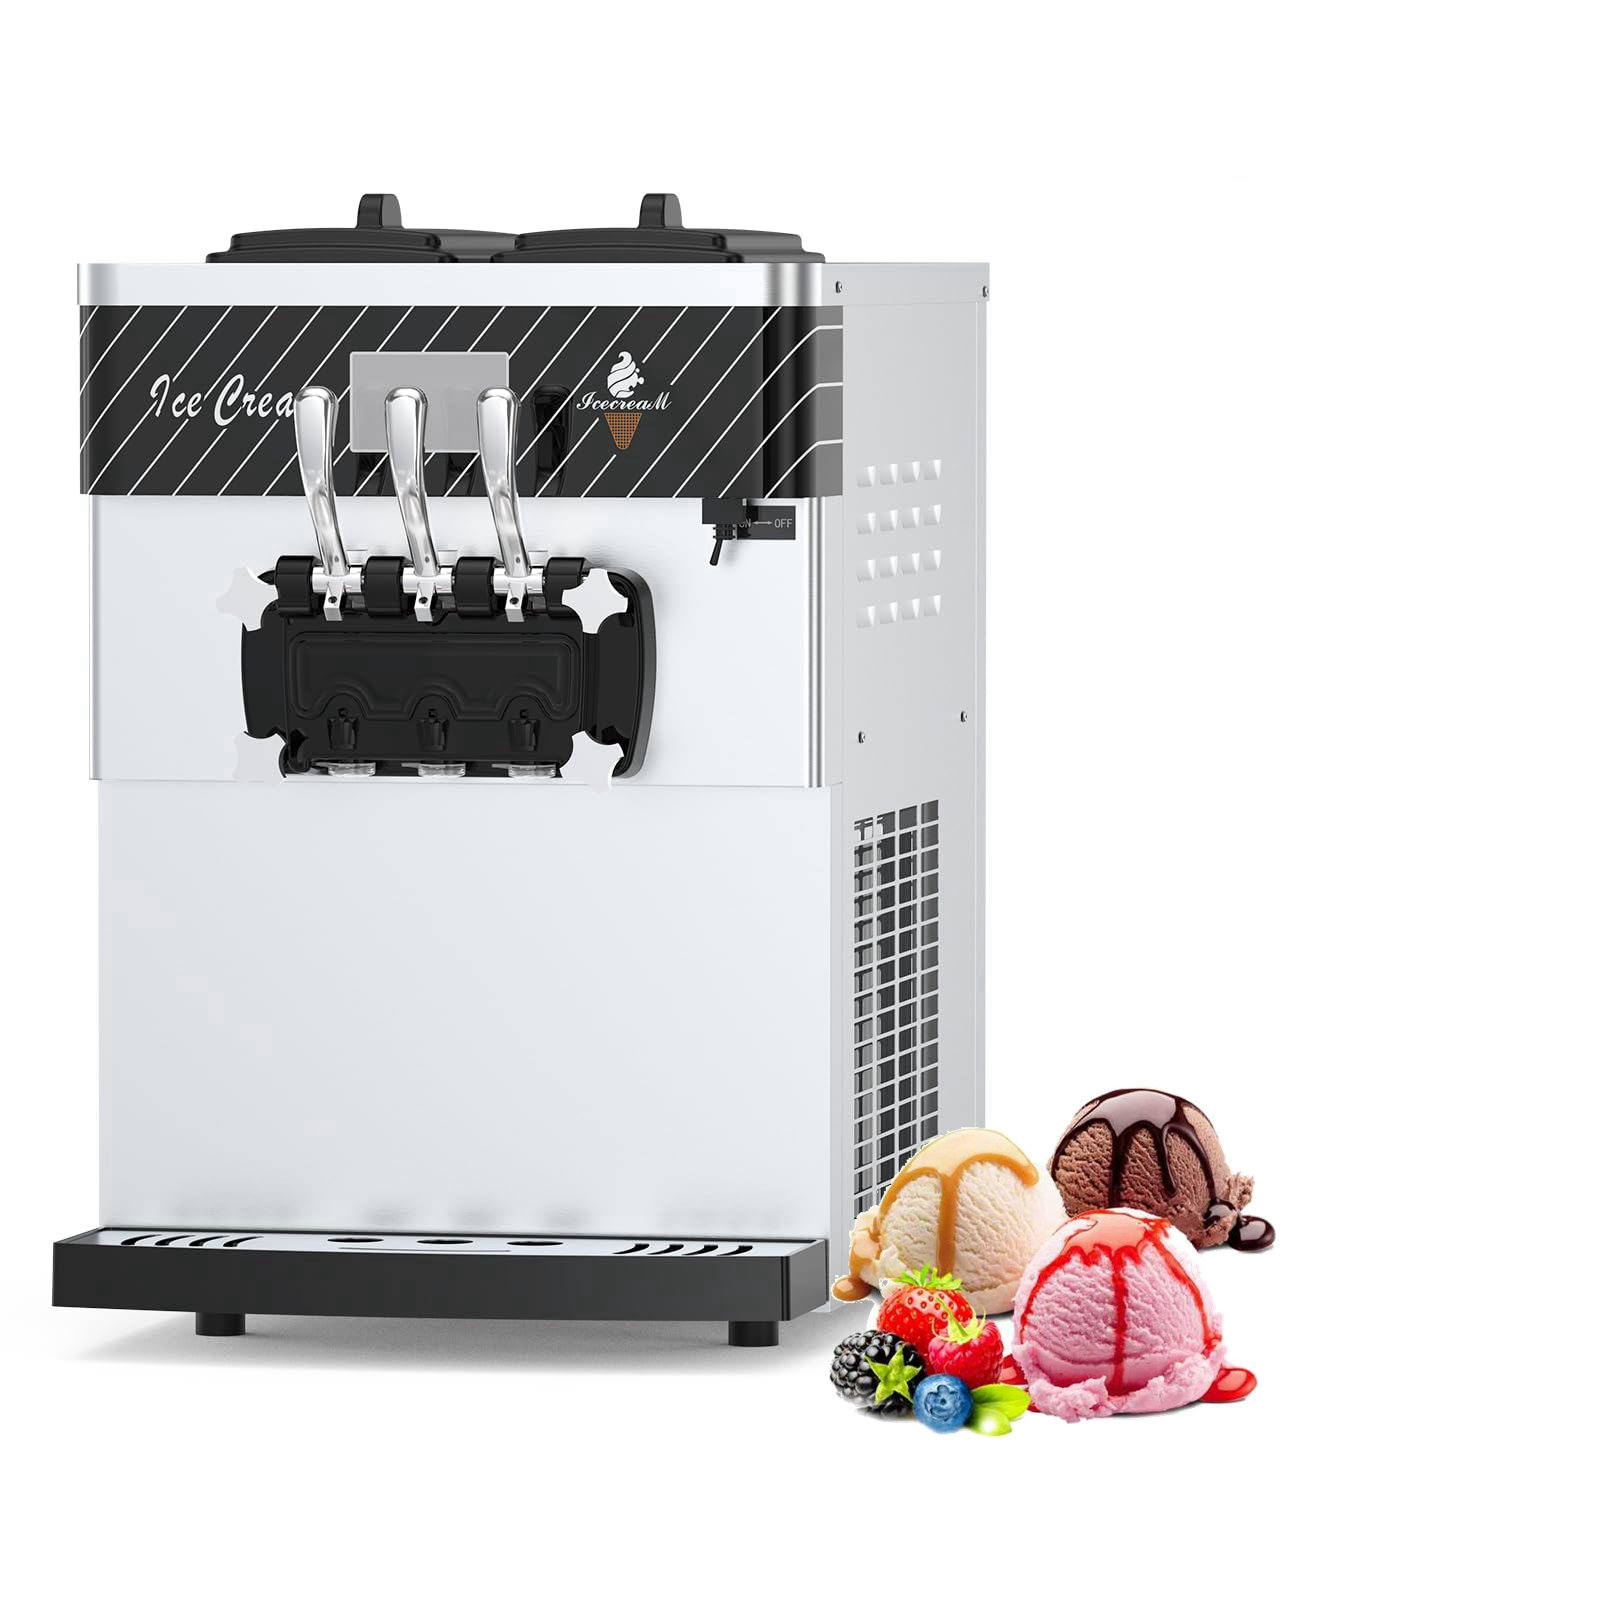 https://assets.wfcdn.com/im/43215626/compr-r85/2519/251907837/commercial-ice-cream-maker-frozen-yogurt-machine-22-30lh-2450-w.jpg